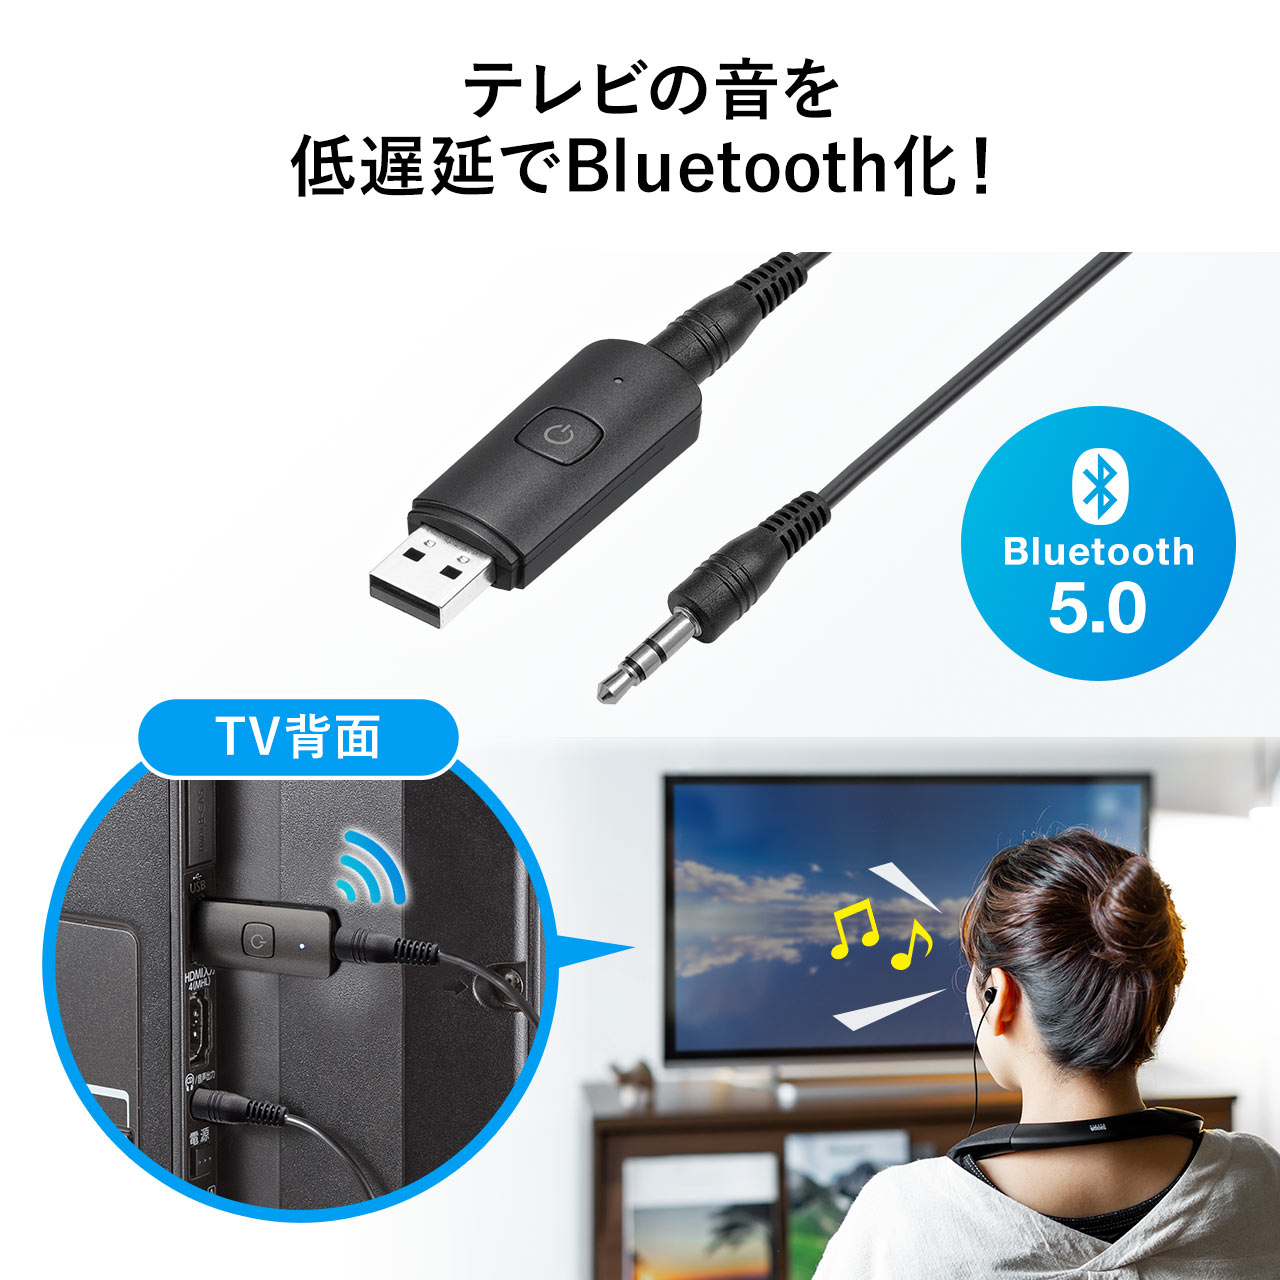 【シークレットセール】Bluetoothオーディオトランスミッター 送信機 テレビ 高音質 低遅延 apt-X LowLatency Bluetooth 5.0 USB電源 400-BTAD010